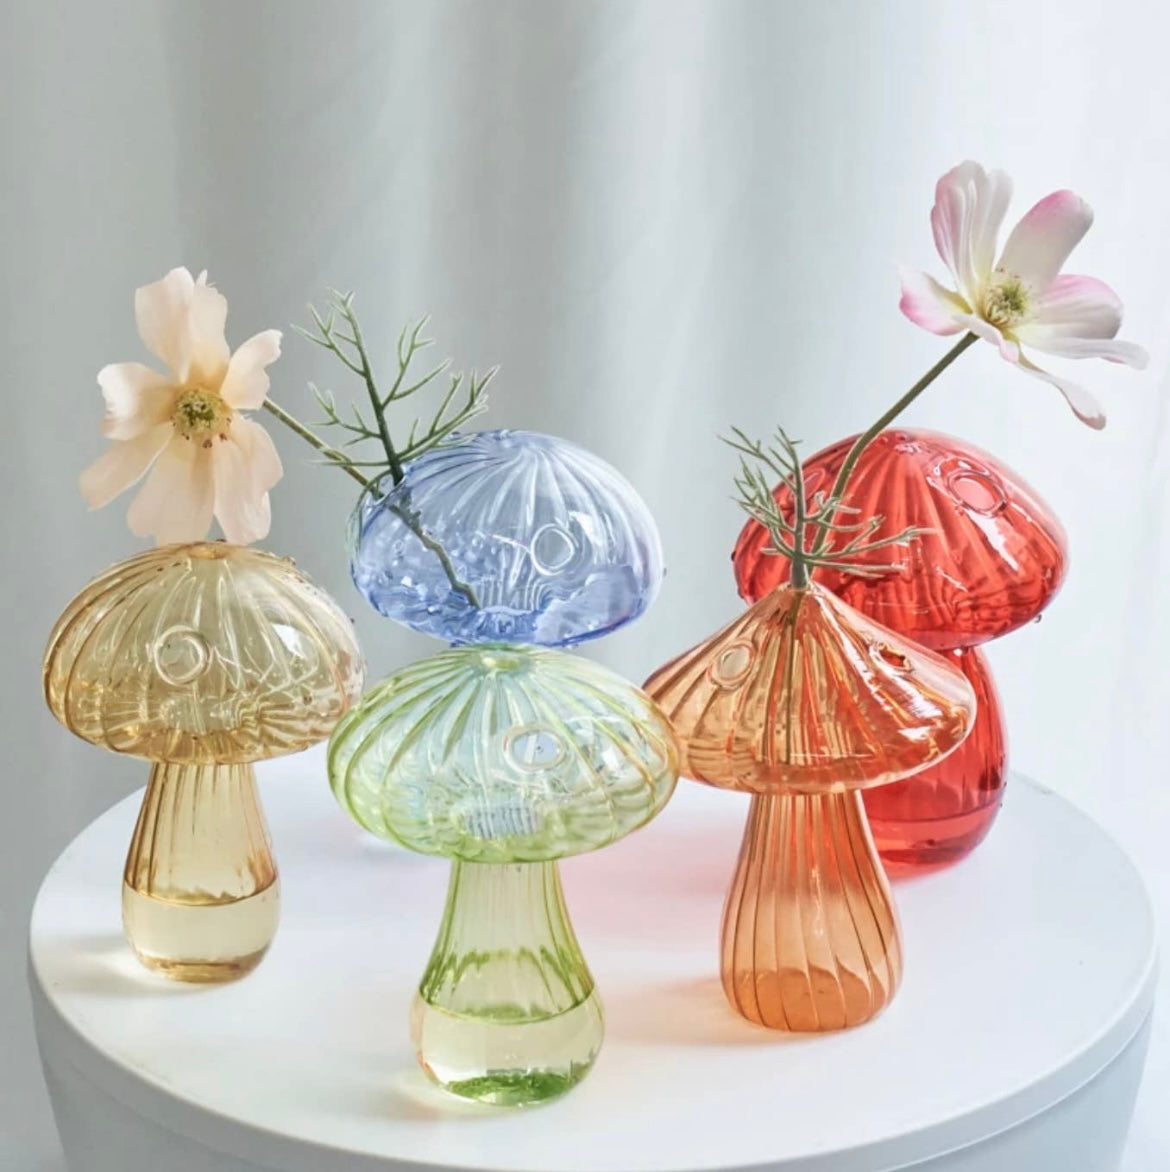 Yellow Mushroom Glass Bud Vase